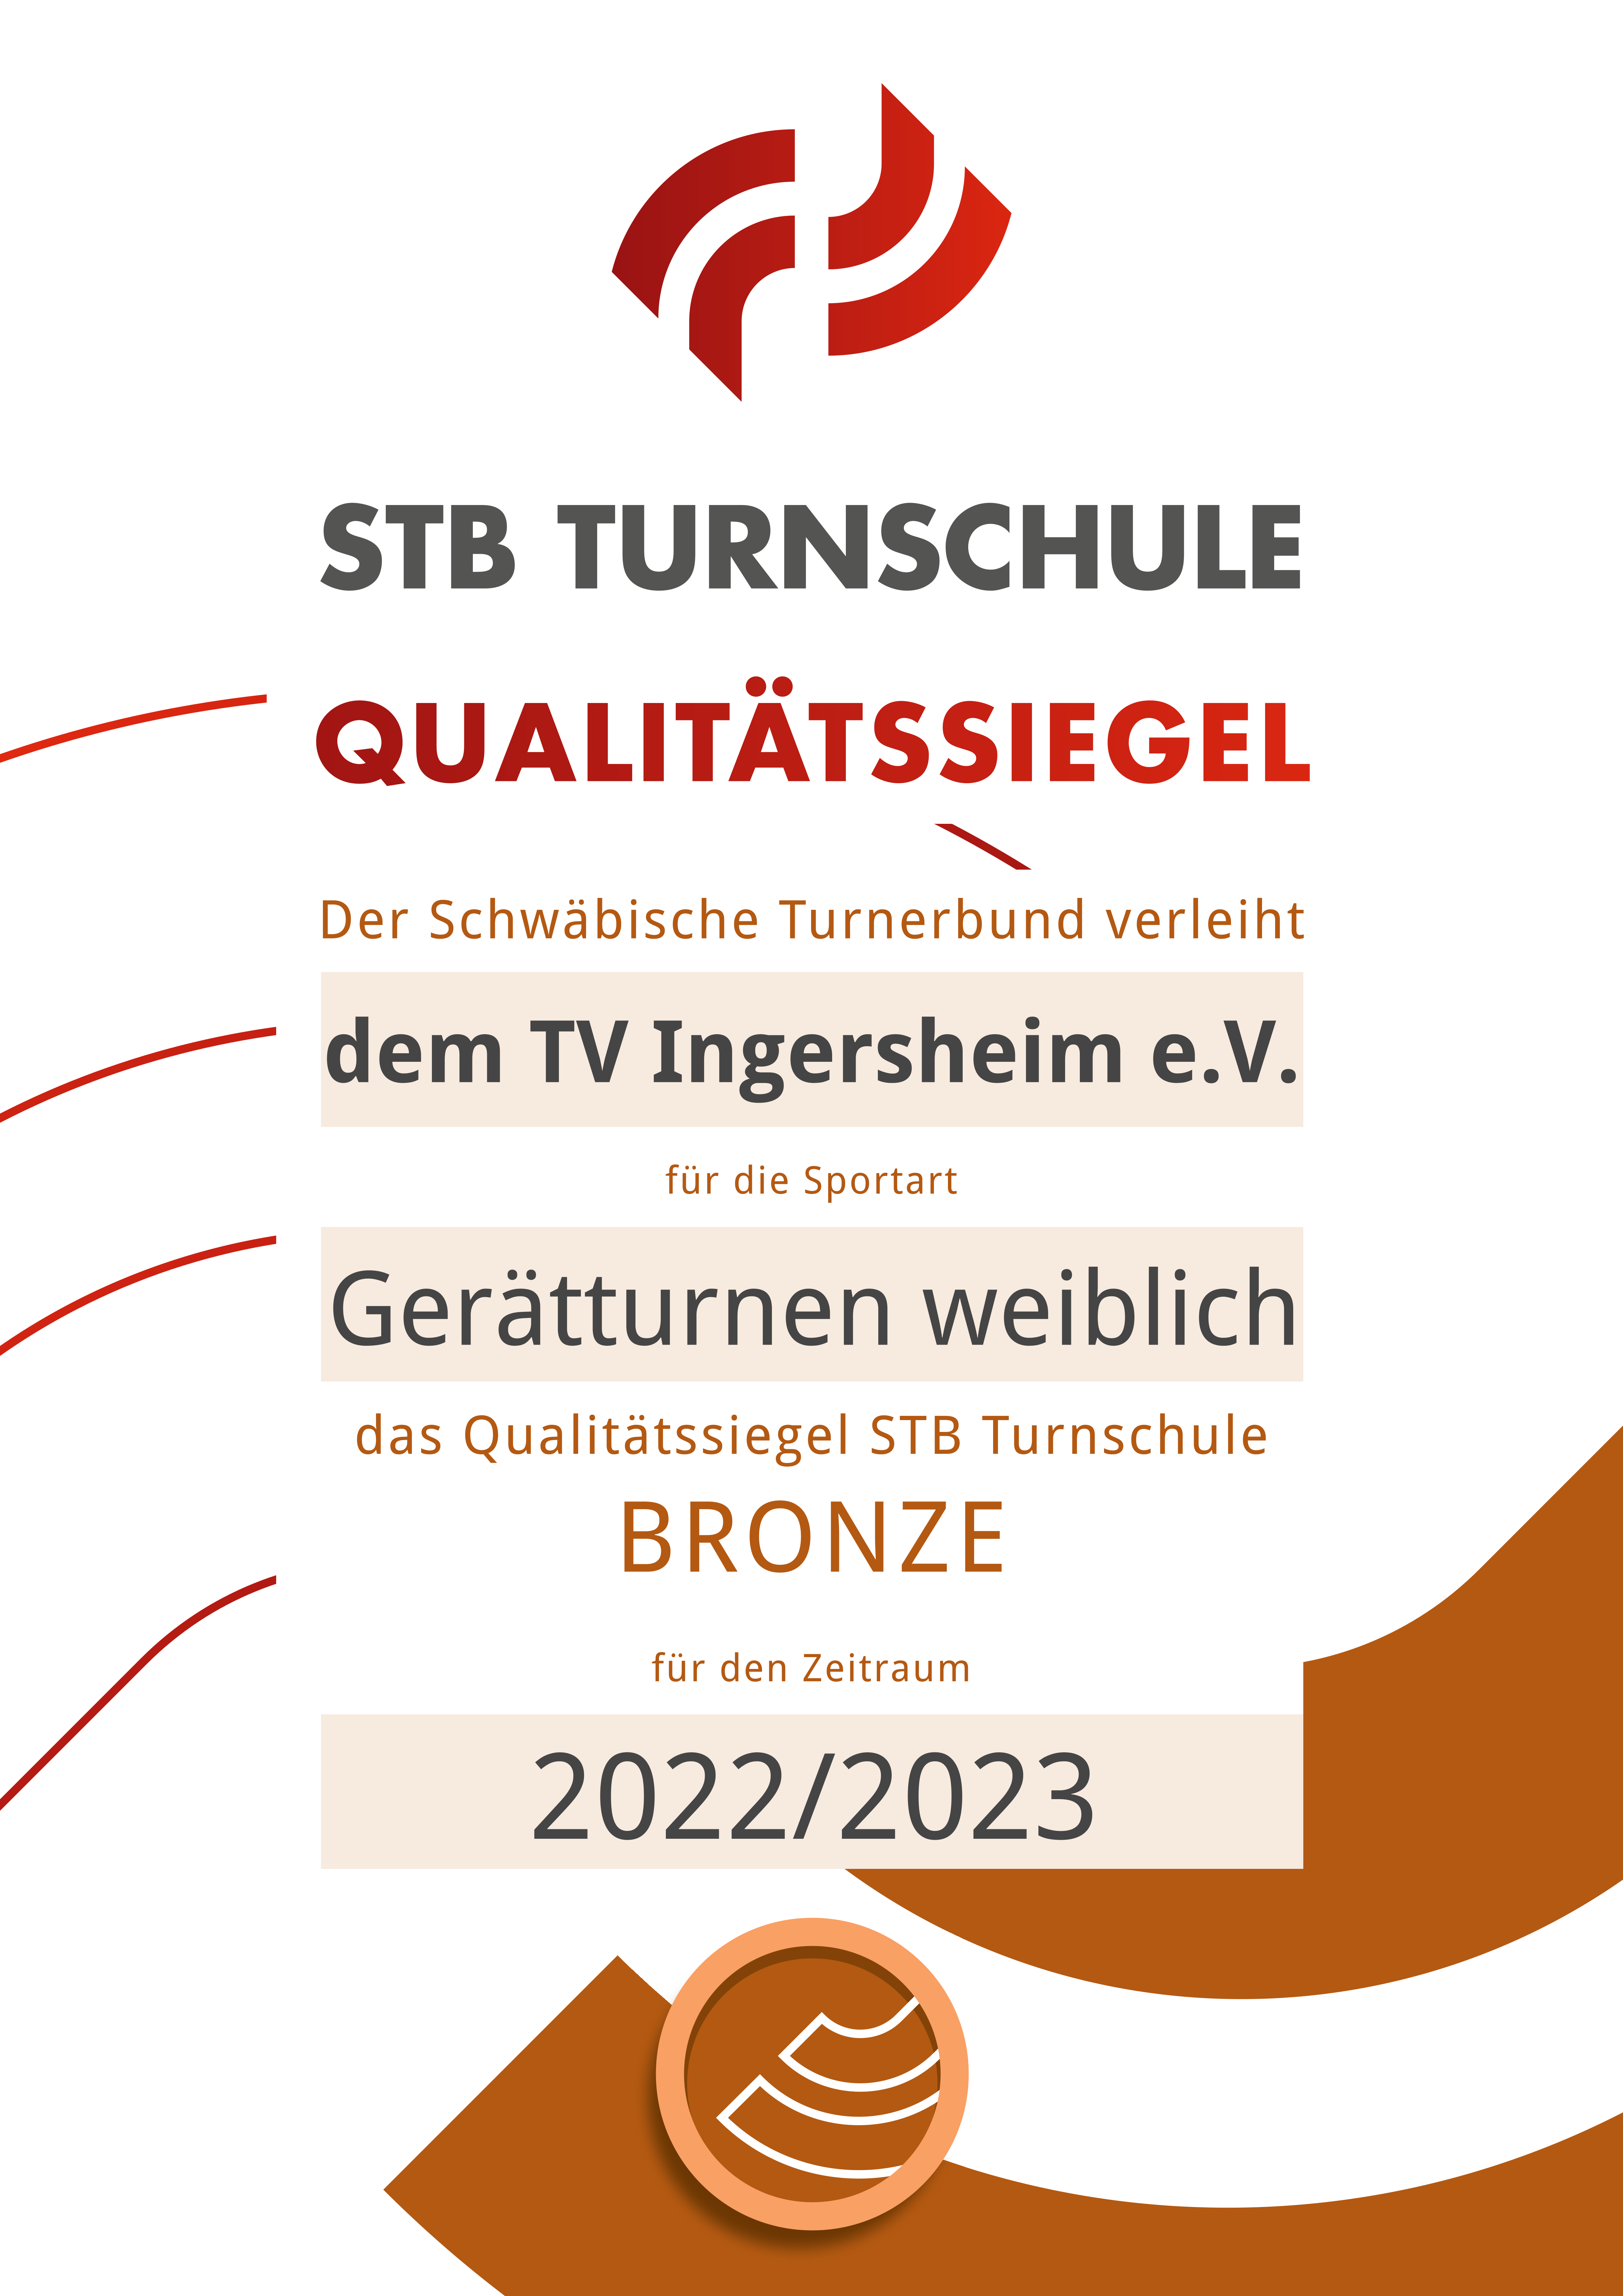 STB Turnschule Qualitätssiegel Bronze TVI weiblich 22 23